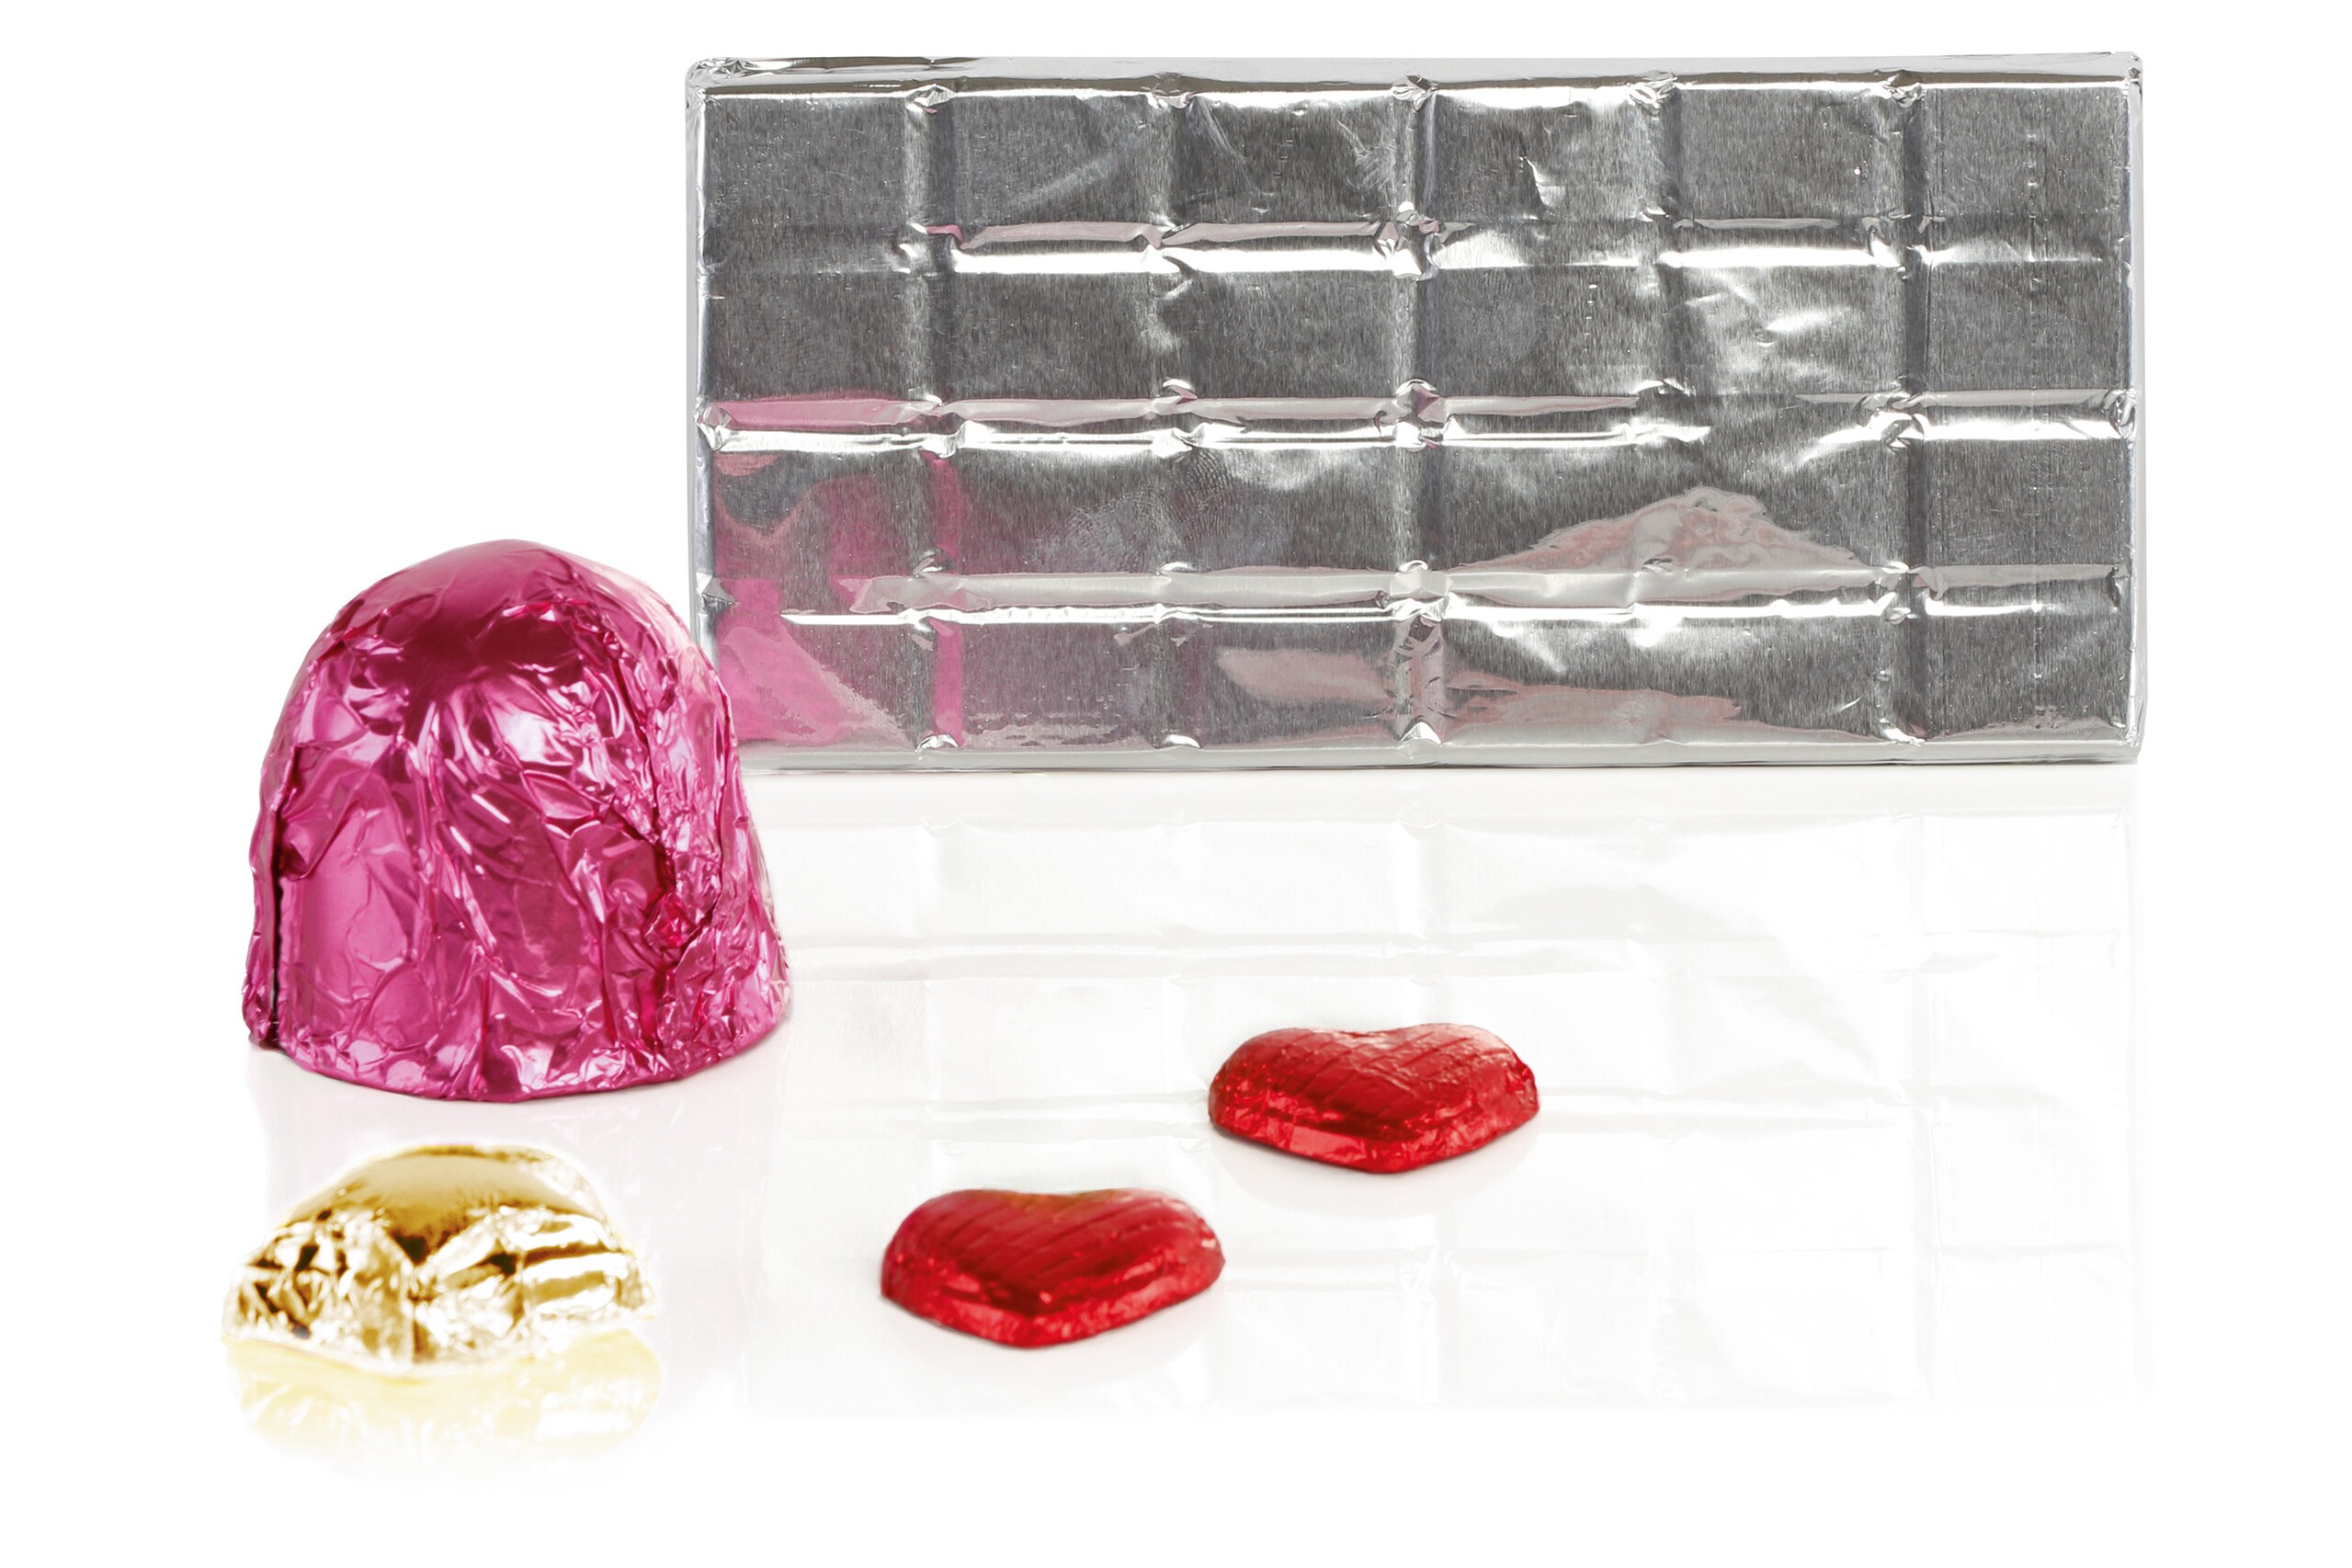 Un baiser au chocolat dans une feuille d'aluminium rose, deux petits cœurs en chocolat dans une feuille d'aluminium rouge, une petite étoile dans une feuille d'aluminium jaune et une tablette de chocolat enveloppée dans une feuille d'aluminium